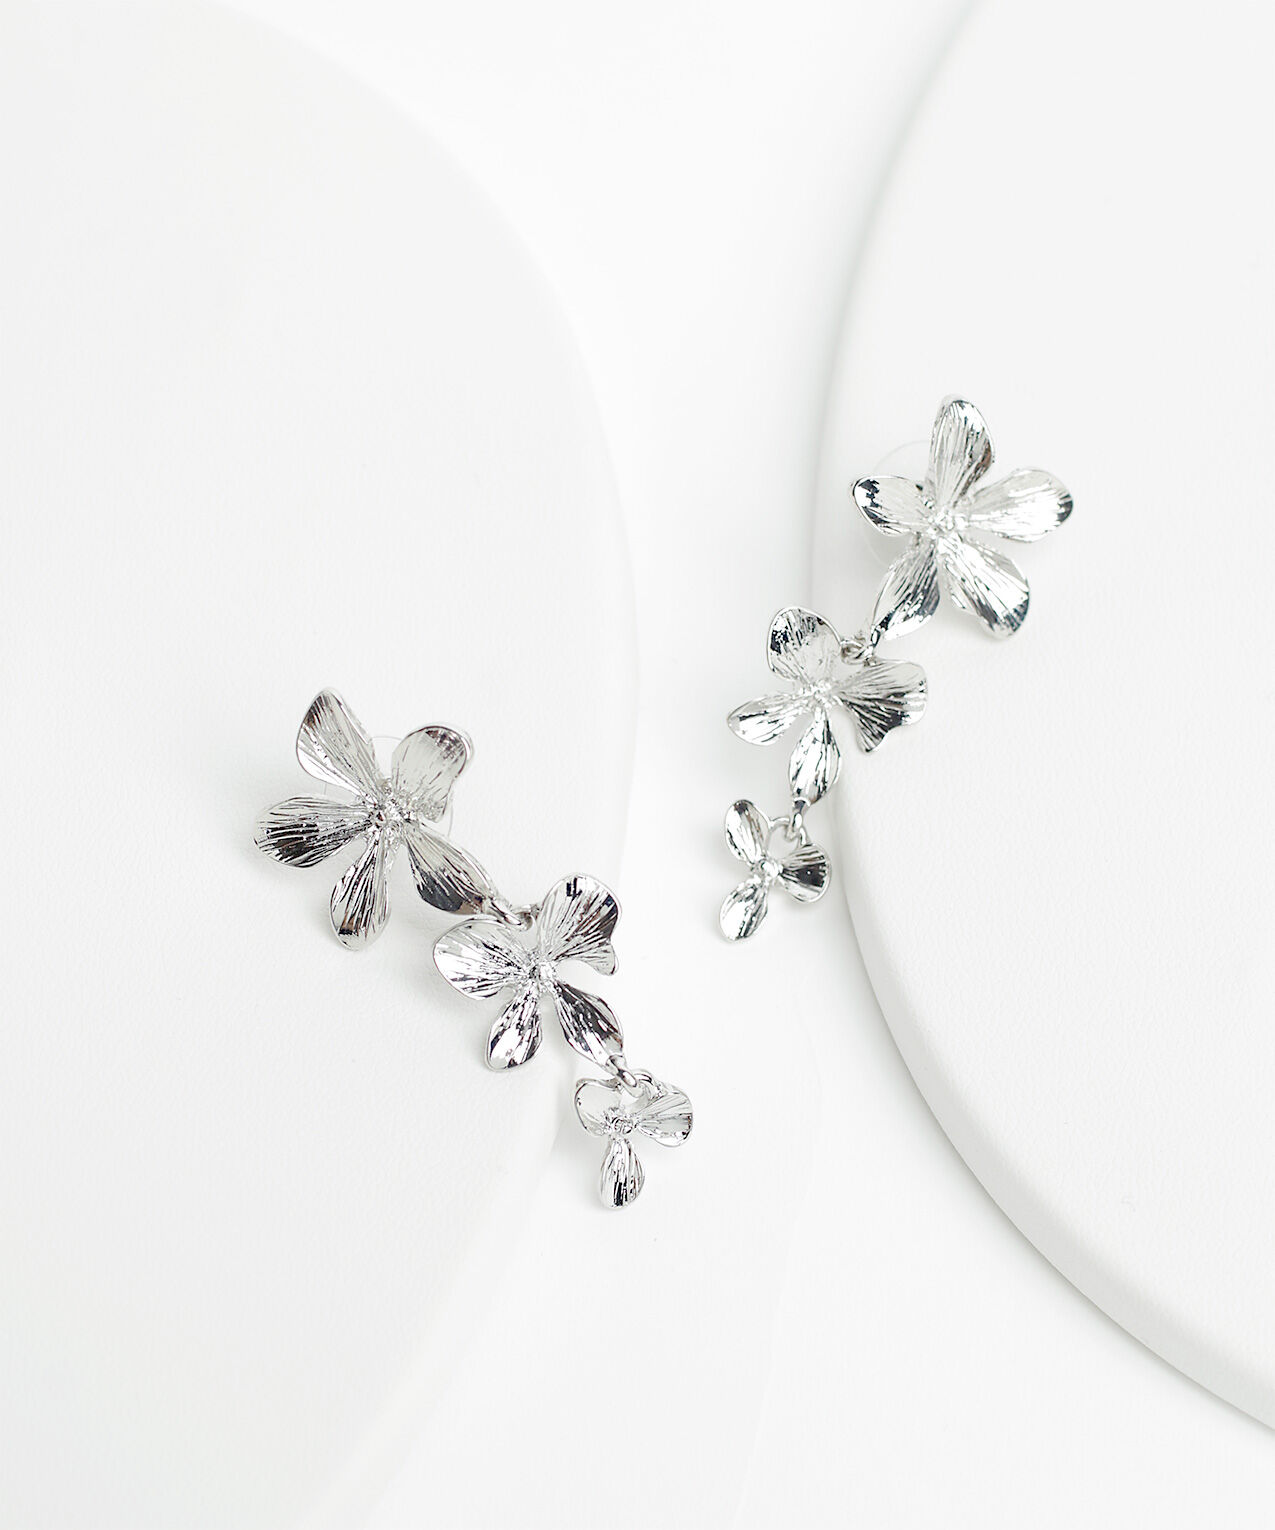 3-Tiered Silver Flower Earrings